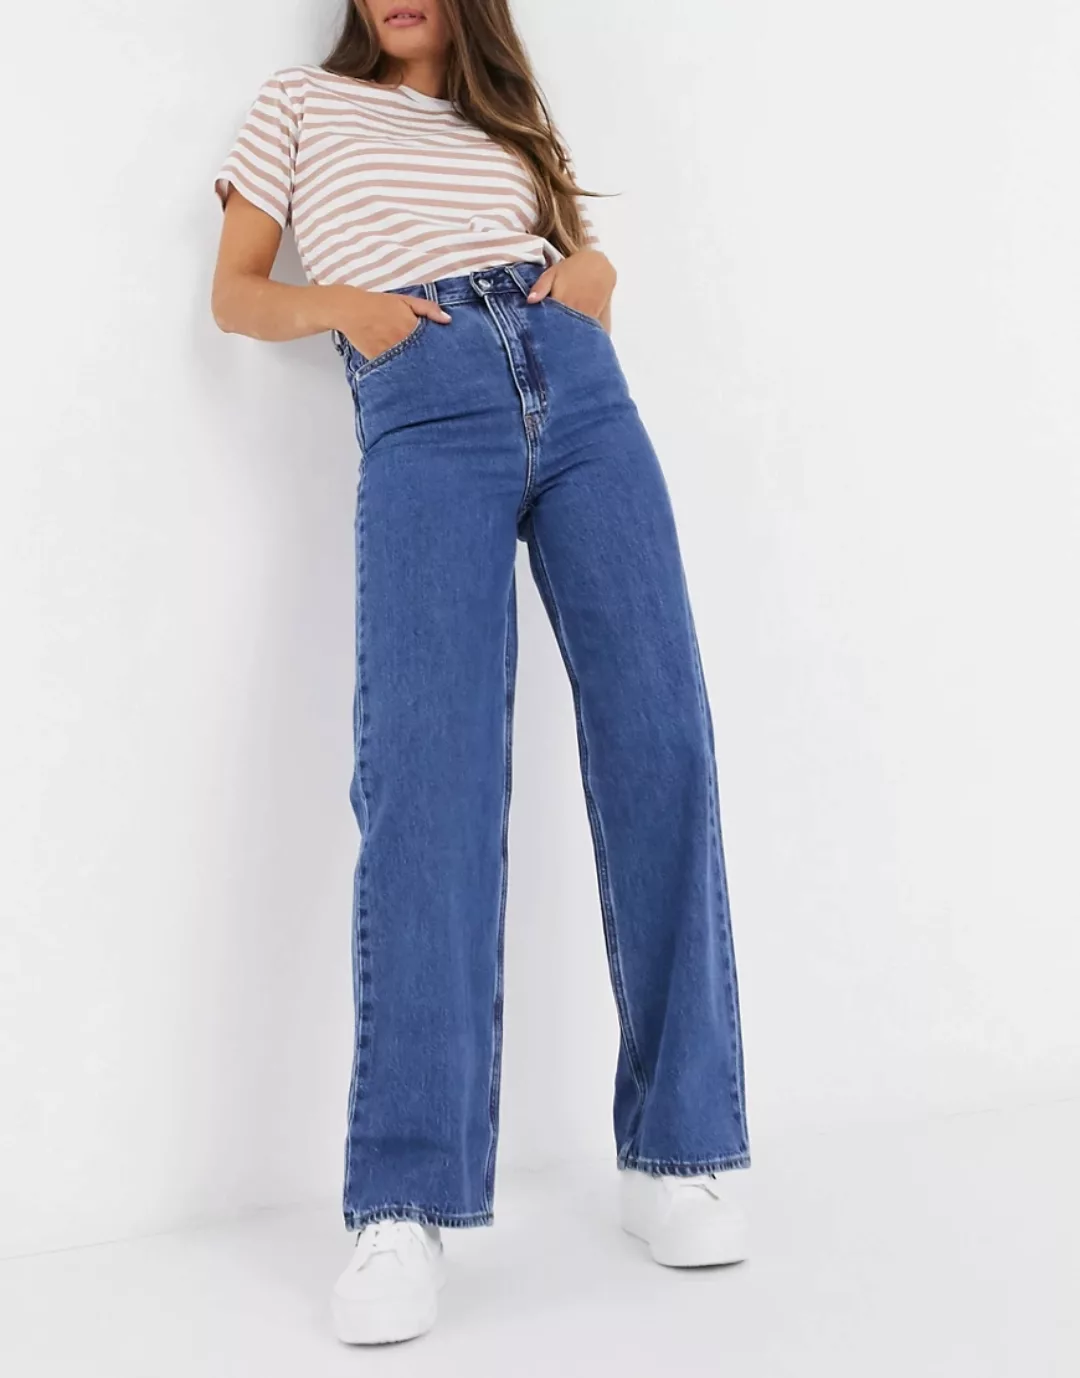 Levi's – Gerade und weit geschnittene Jeans mit hohem Bund in Dunkelblau günstig online kaufen